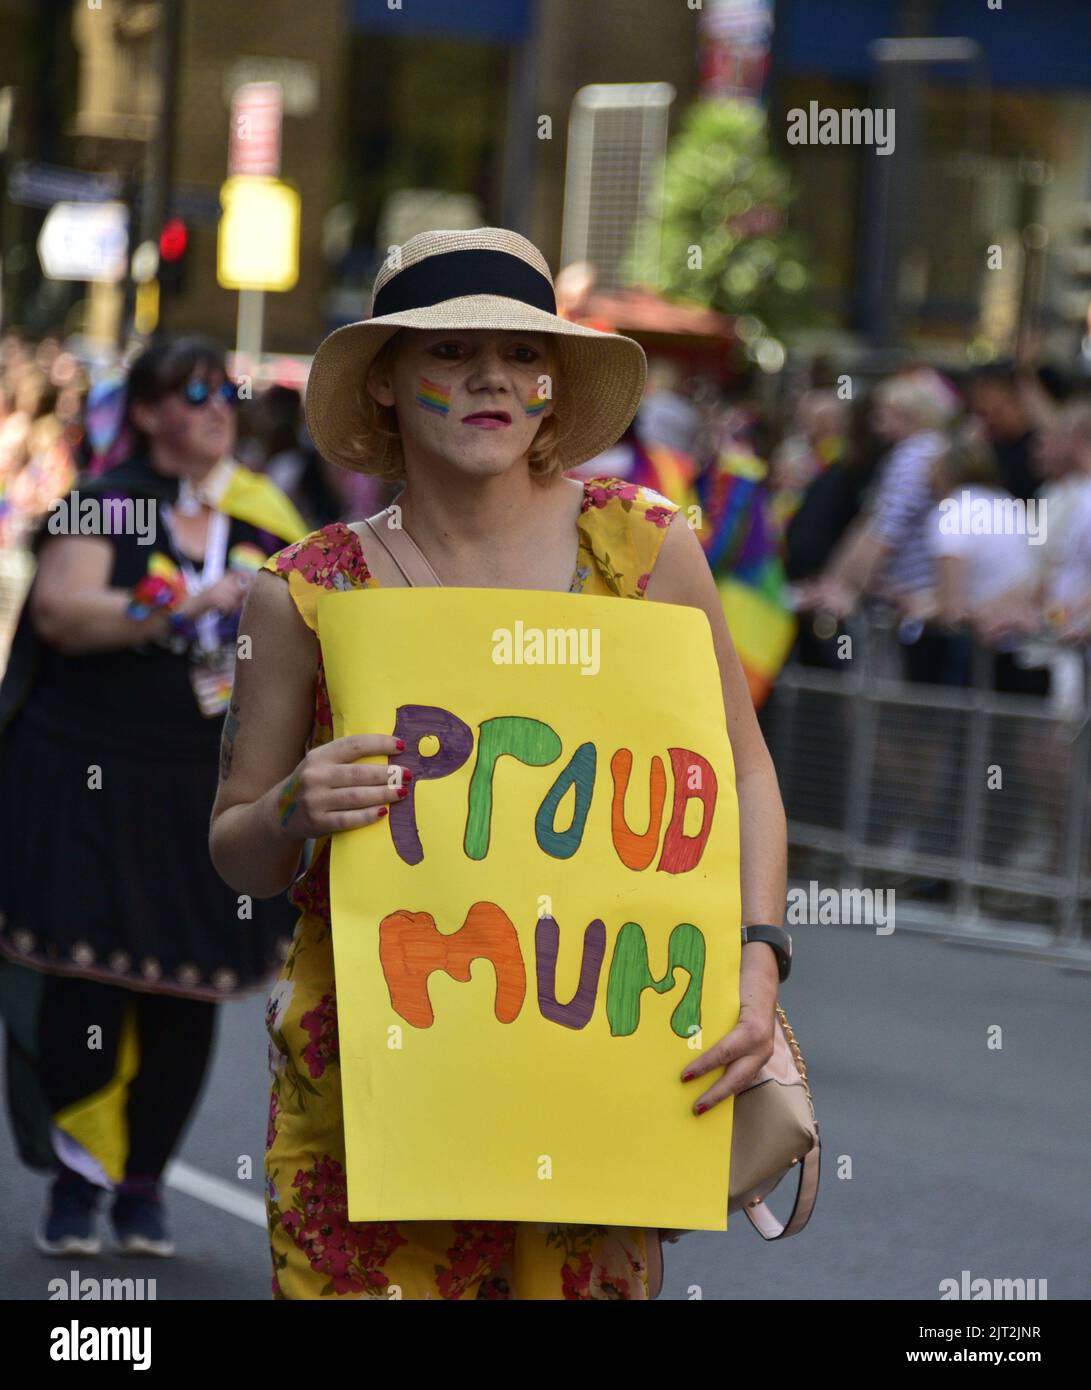 Manchester, Reino Unido. 27th de agosto de 2022. Una mujer lleva un cartel de 'madre orgullosa'. Los participantes participan en el desfile LGBTQ+ Pride Parade, en el centro de Manchester, Reino Unido, mientras LGBTQ+ Pride continúa durante el fin de semana festivo del 26th al 29th de agosto. Los organizadores dicen: 'Manchester Pride es una de las principales organizaciones benéficas LGBTQ+ del Reino Unido. Nuestra visión es un mundo donde las personas LGBTQ+ son libres de vivir y amar sin prejuicio. Somos parte de un movimiento mundial del Orgullo que celebra la igualdad LGBTQ+ y desafía la discriminación.' Crédito: Terry Waller/Alamy Live News Foto de stock